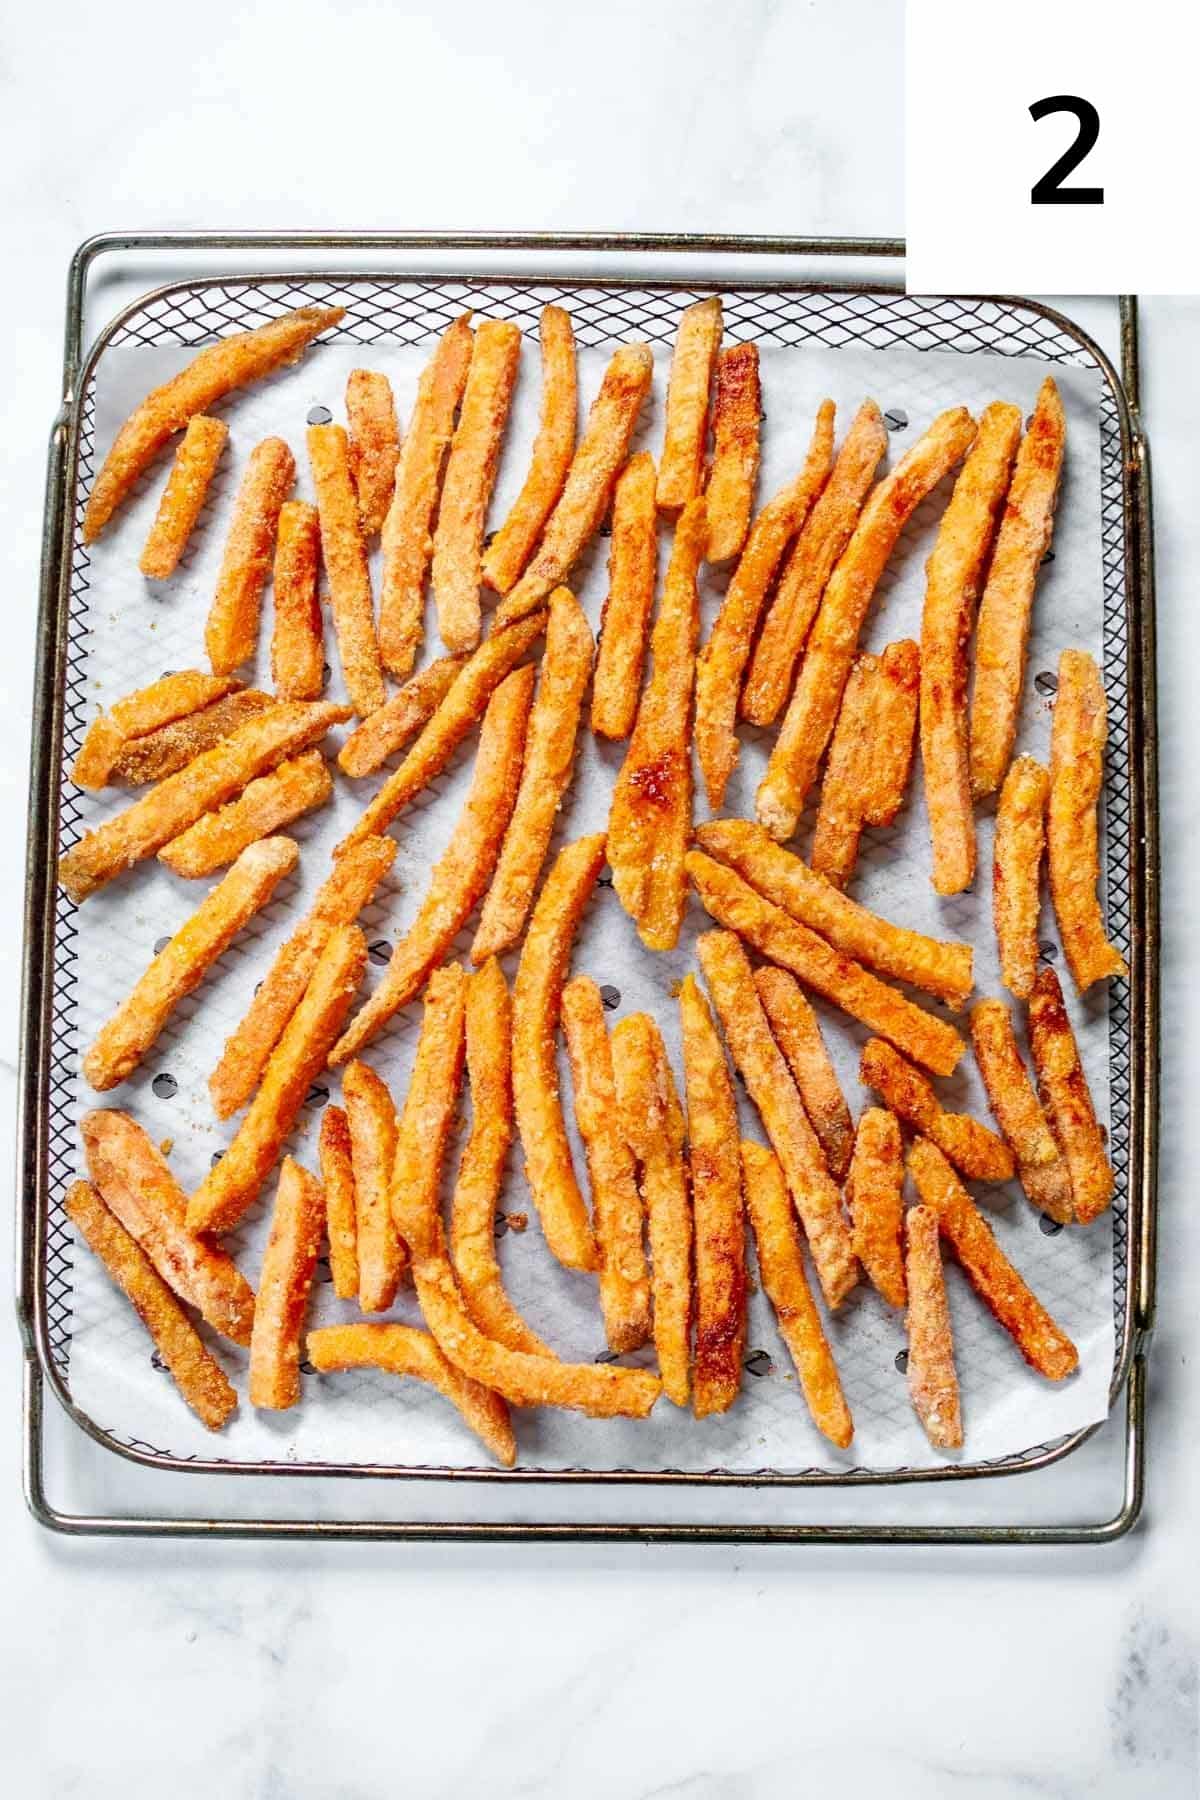 Frozen sweet potato fries on air fryer tray.